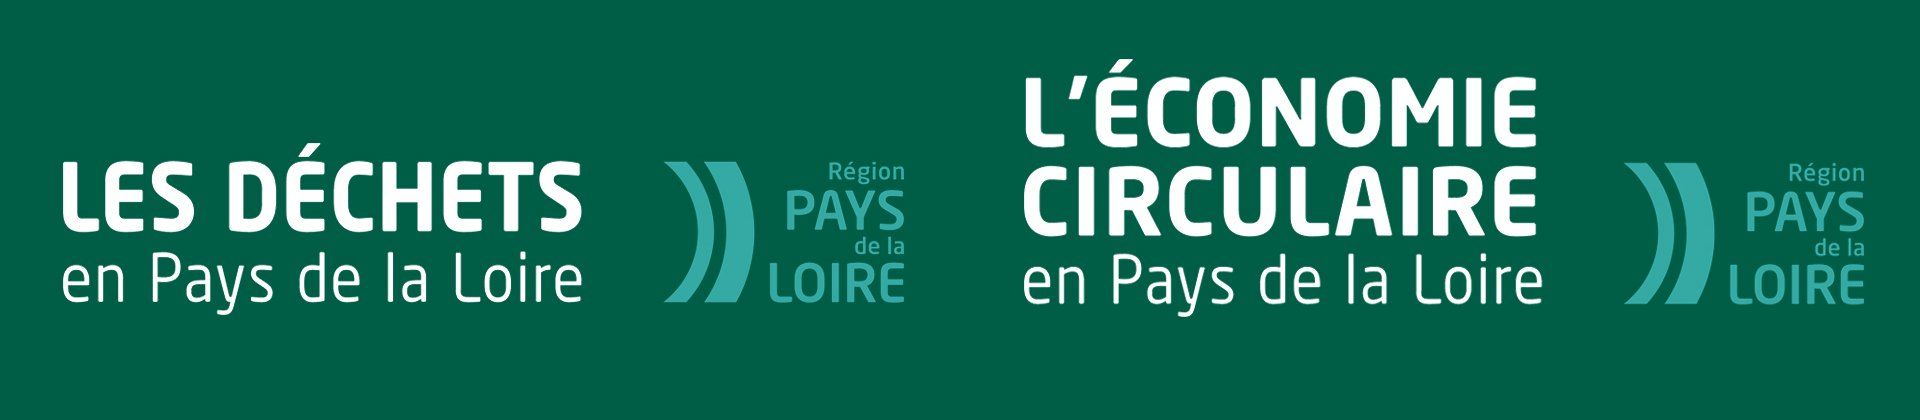 logo Pays de la loire avec le bloc marque : Les Déchets et L'économie circulaire en Pays de la Loire